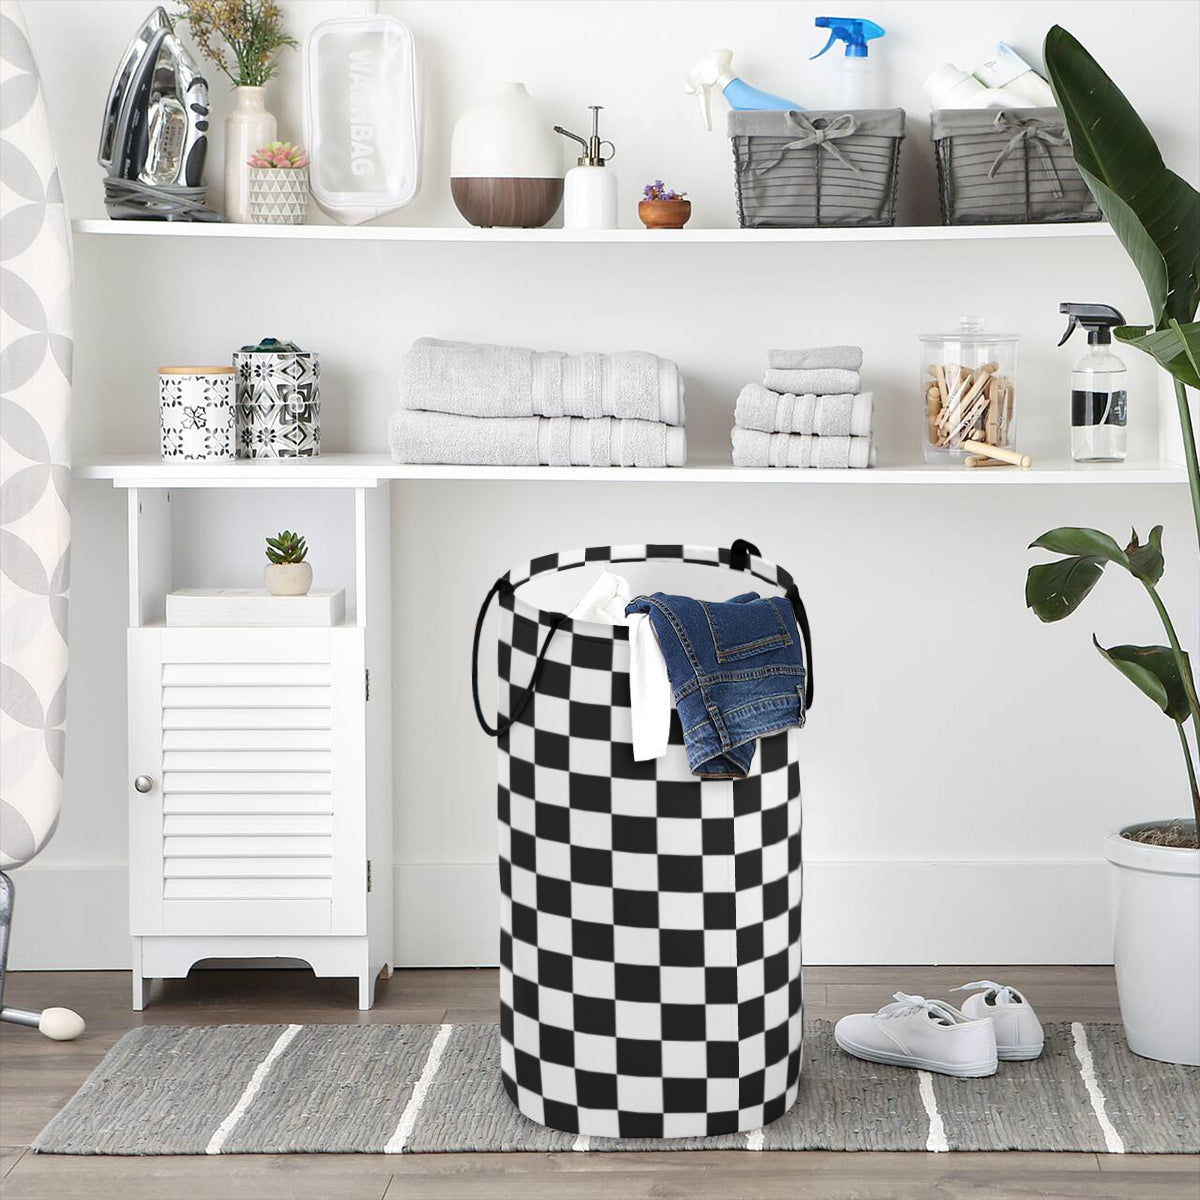 Large Capacity Foldable Laundry Basket Black and White | Polyester